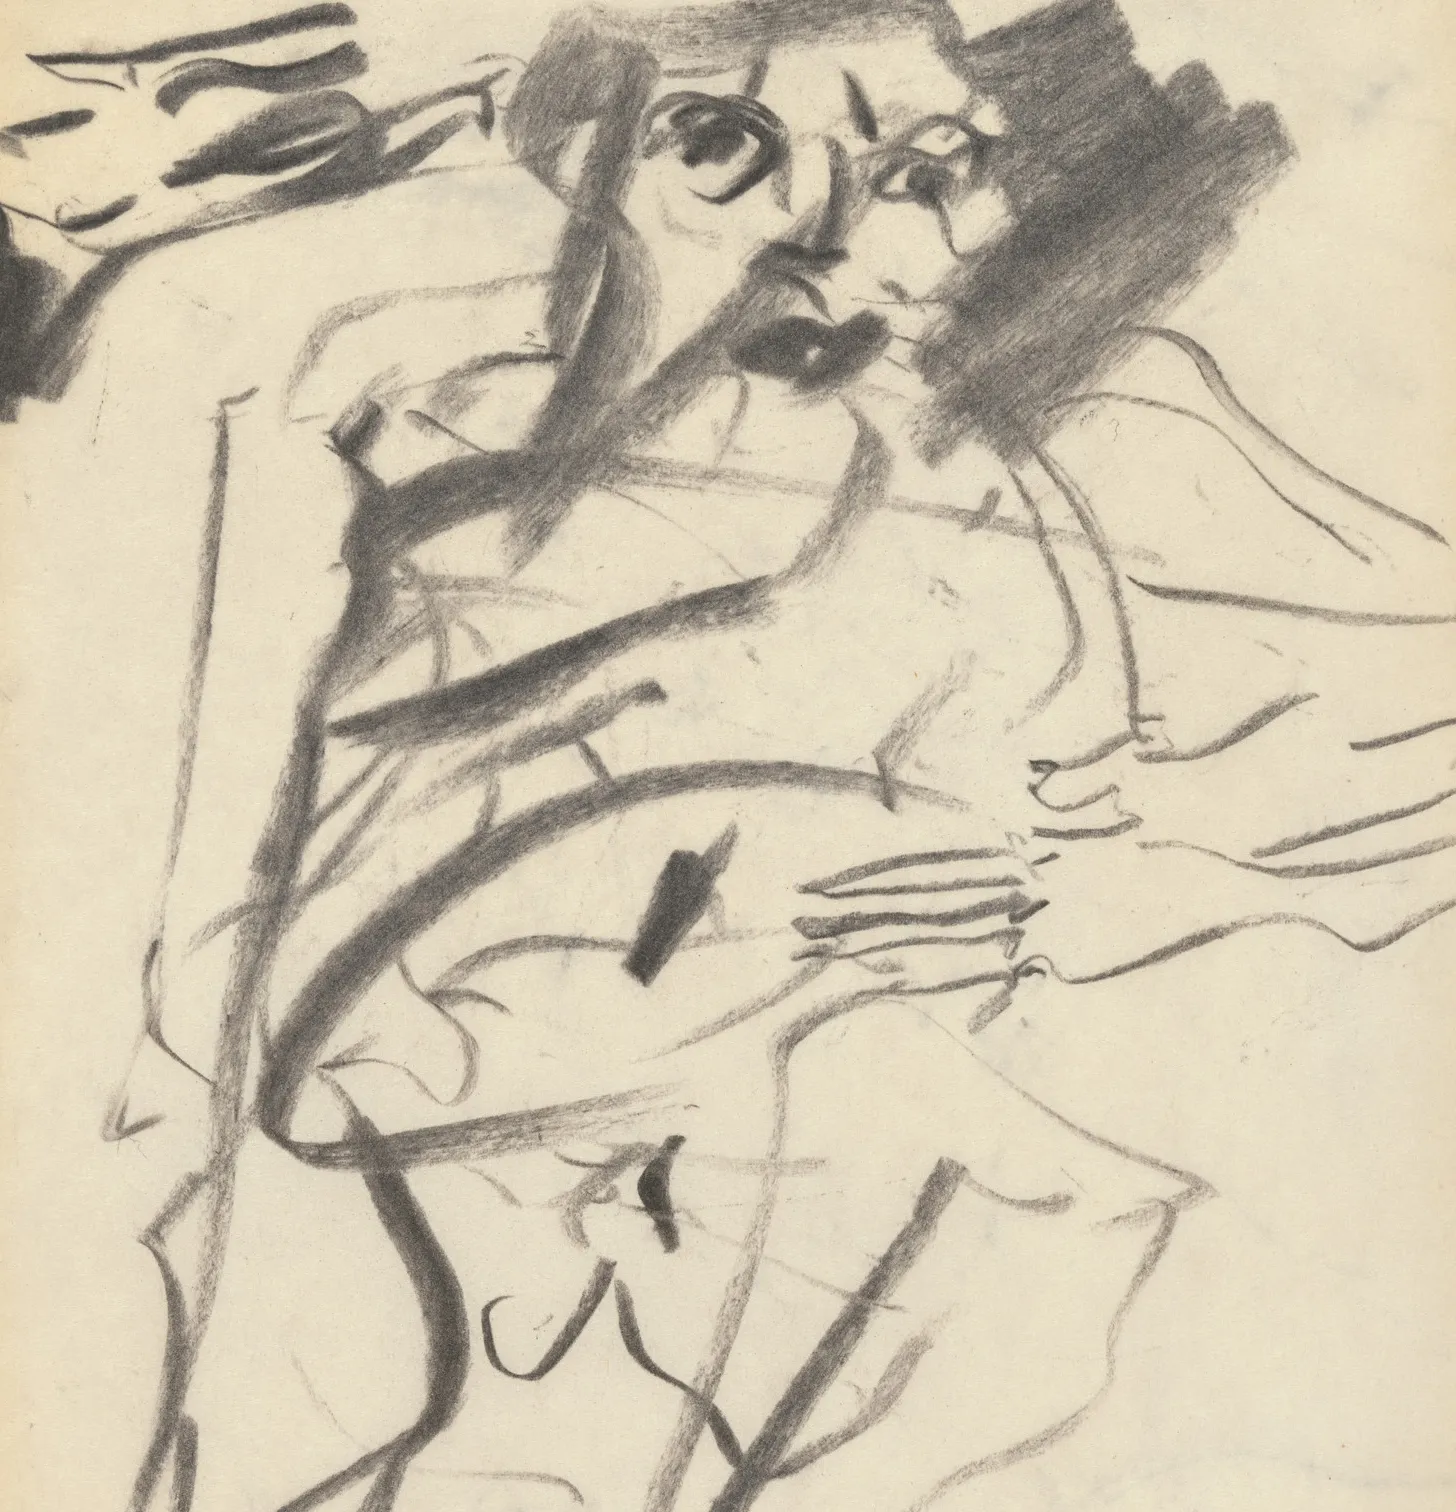 Willem de Kooning, *Untitled*, 1966, detail